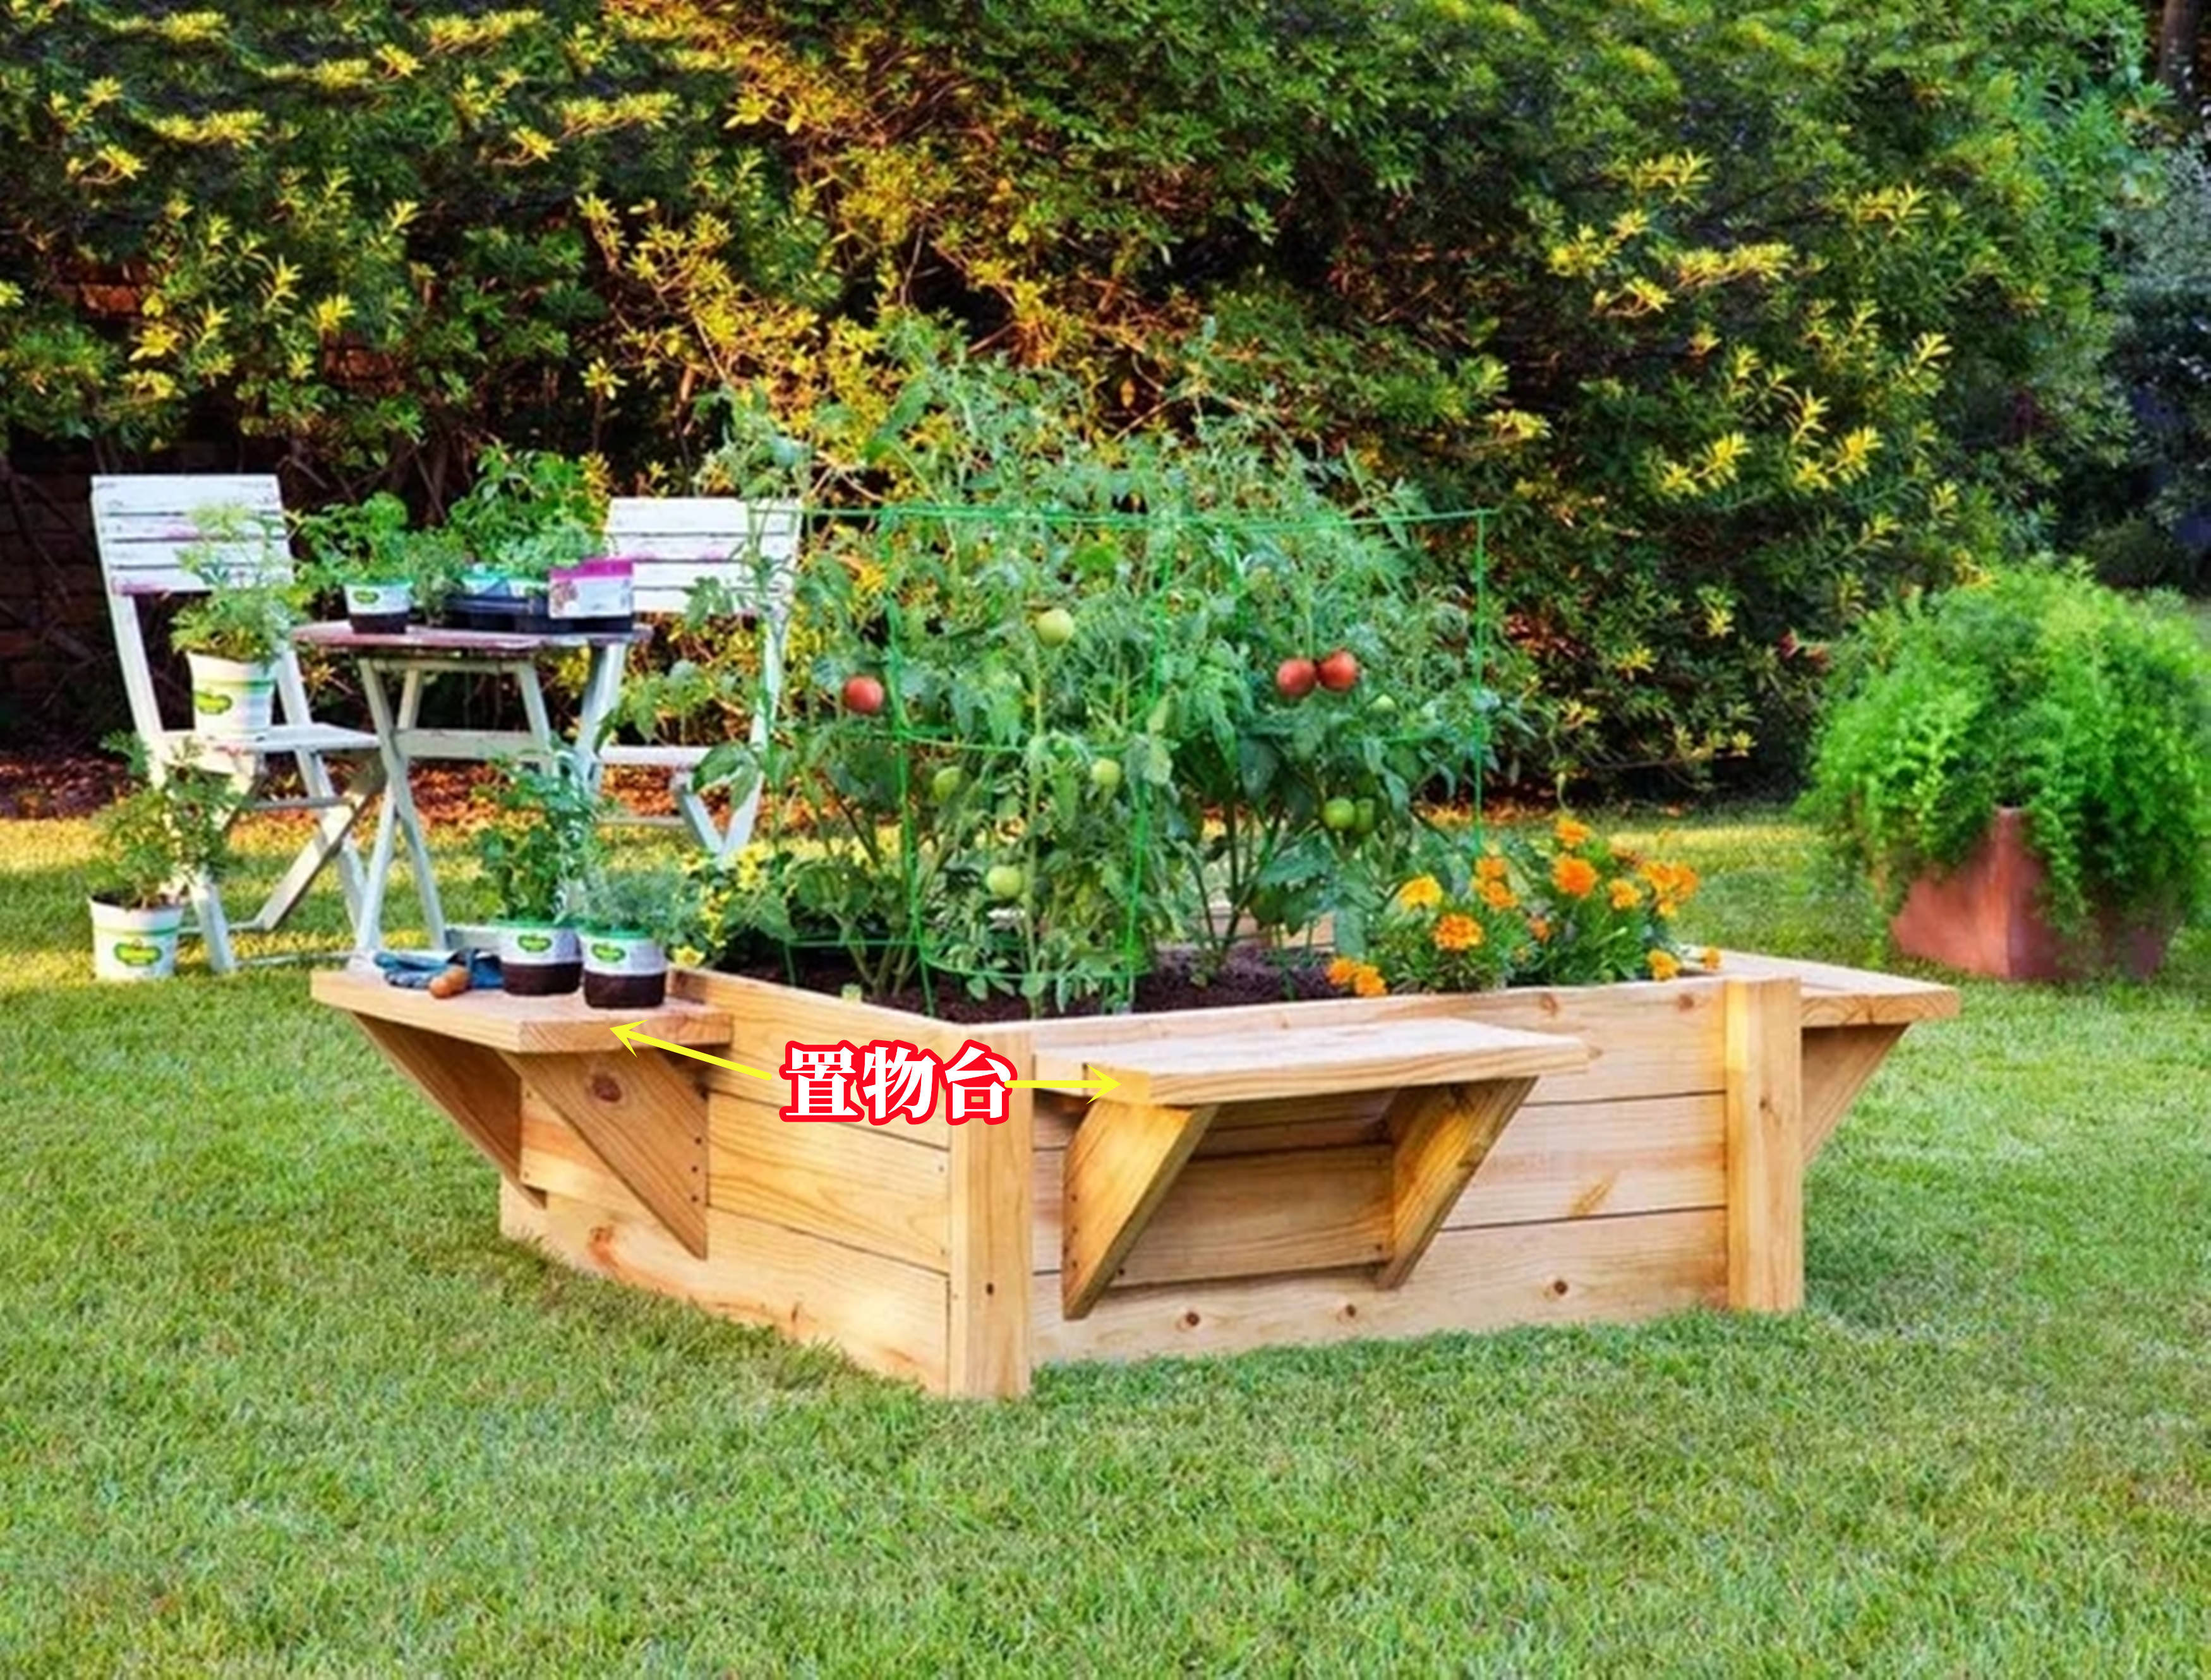 要是有个院子就好了地面插一圈木板围个小菜园忙前忙后也乐意